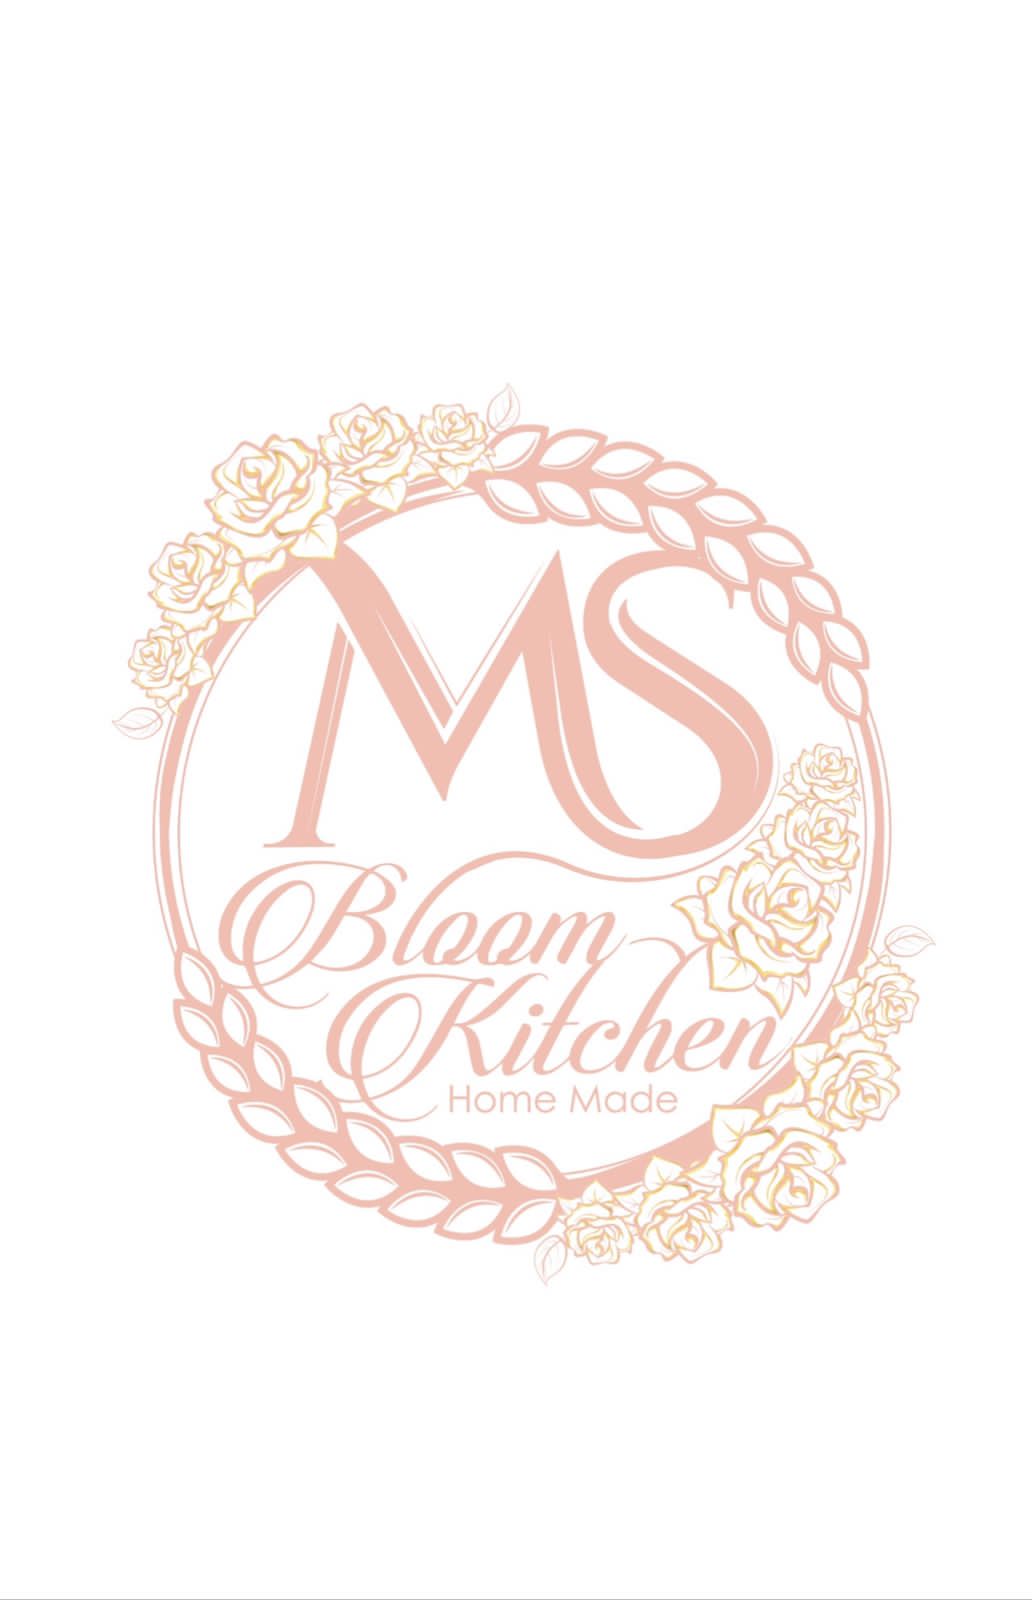 Ms Bloom Kitchen